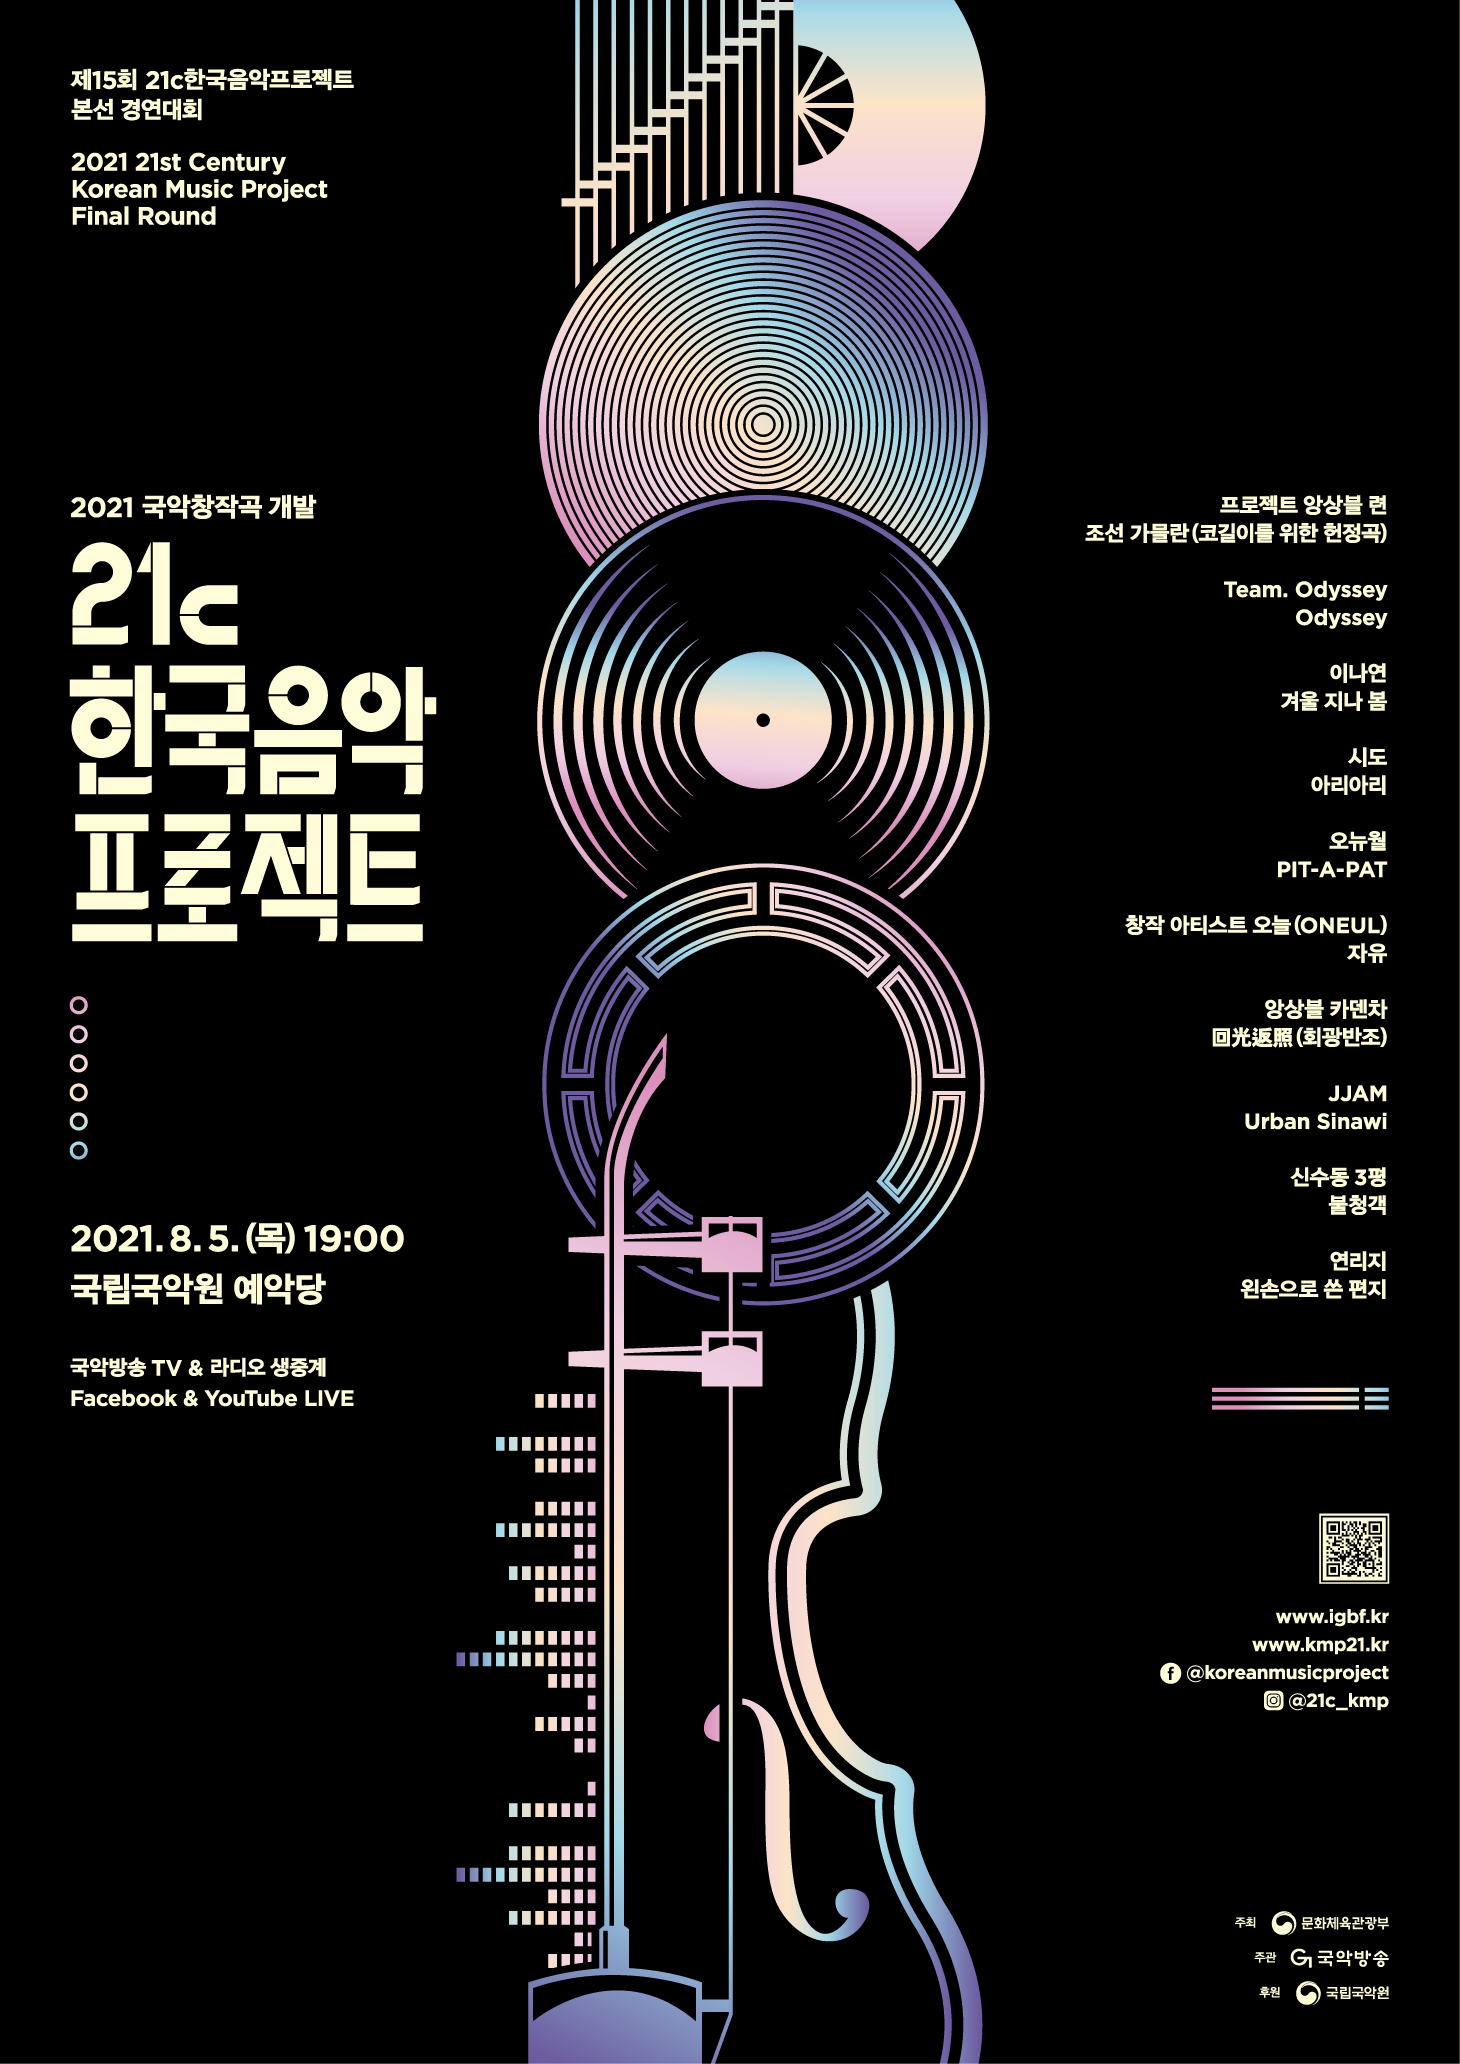 2021 국악창작곡개발 제15회 21c한국음악프로젝트­본선 포스터_자세한 내용 하단참조